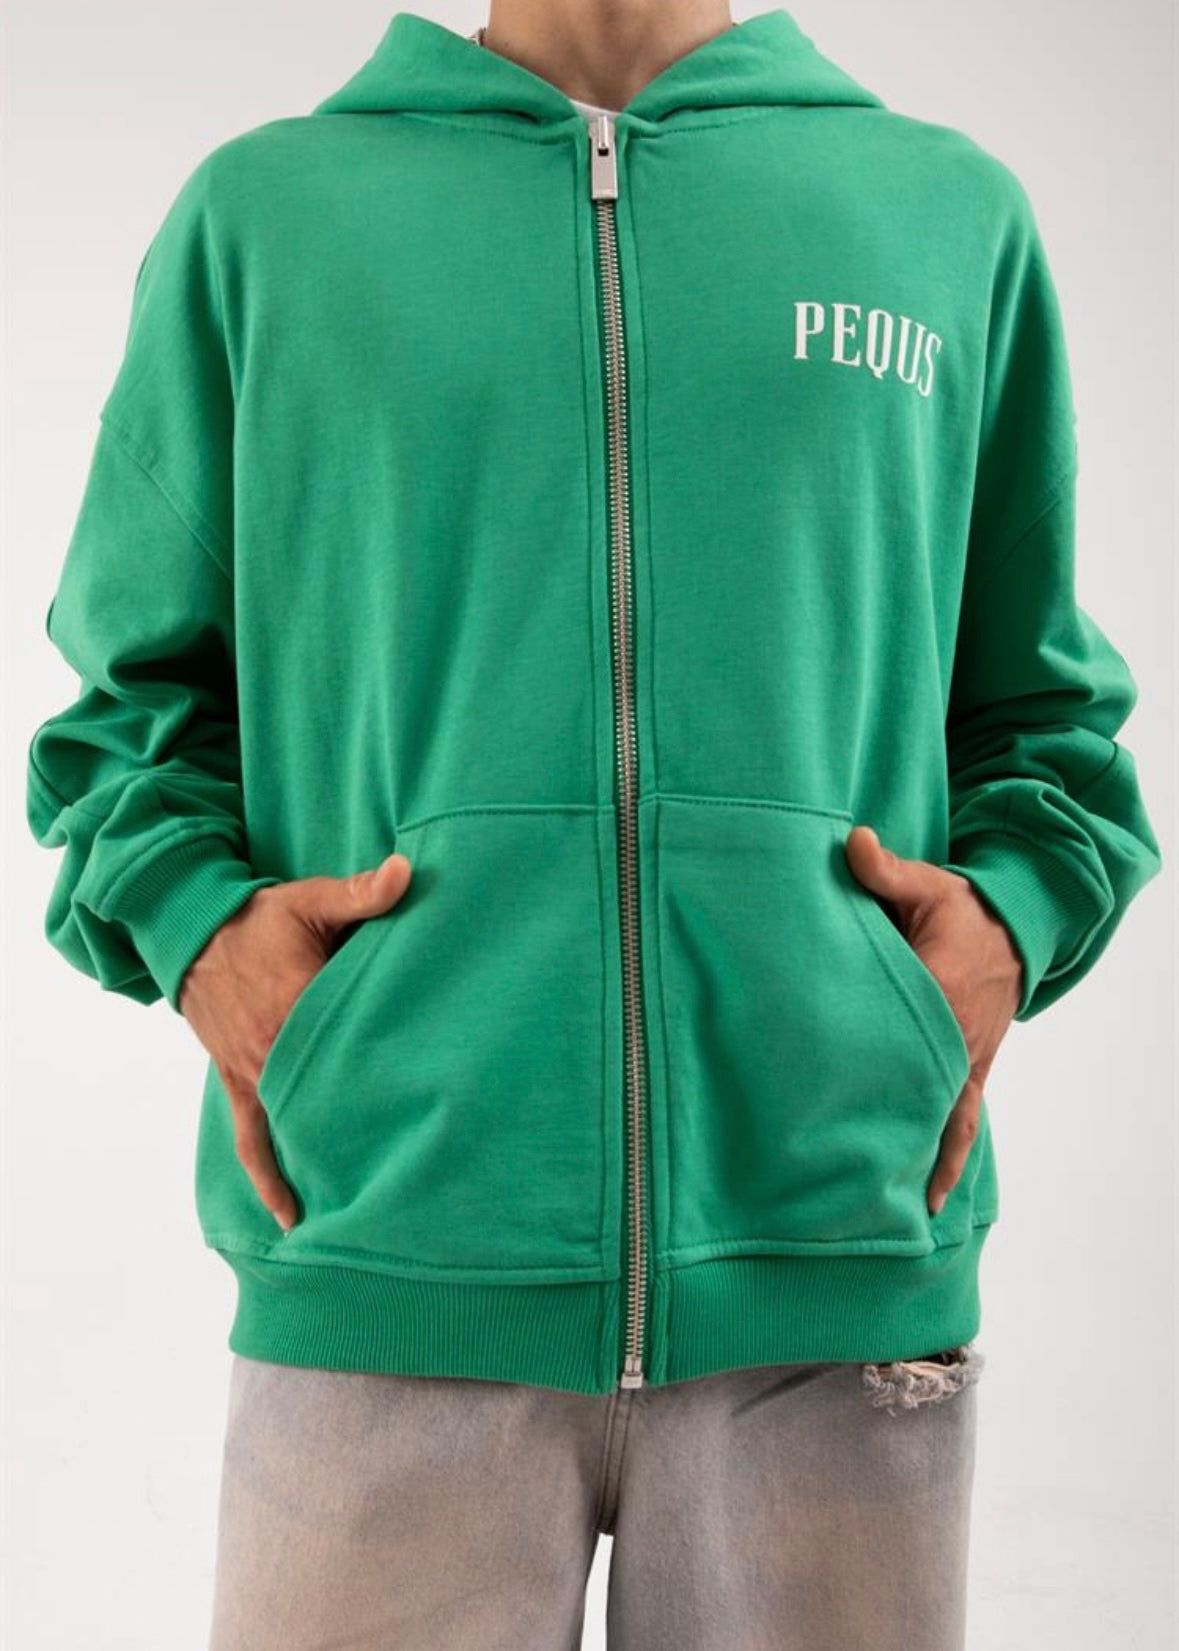 Premuim Peques Zipper Hoodie - Clothing Lab